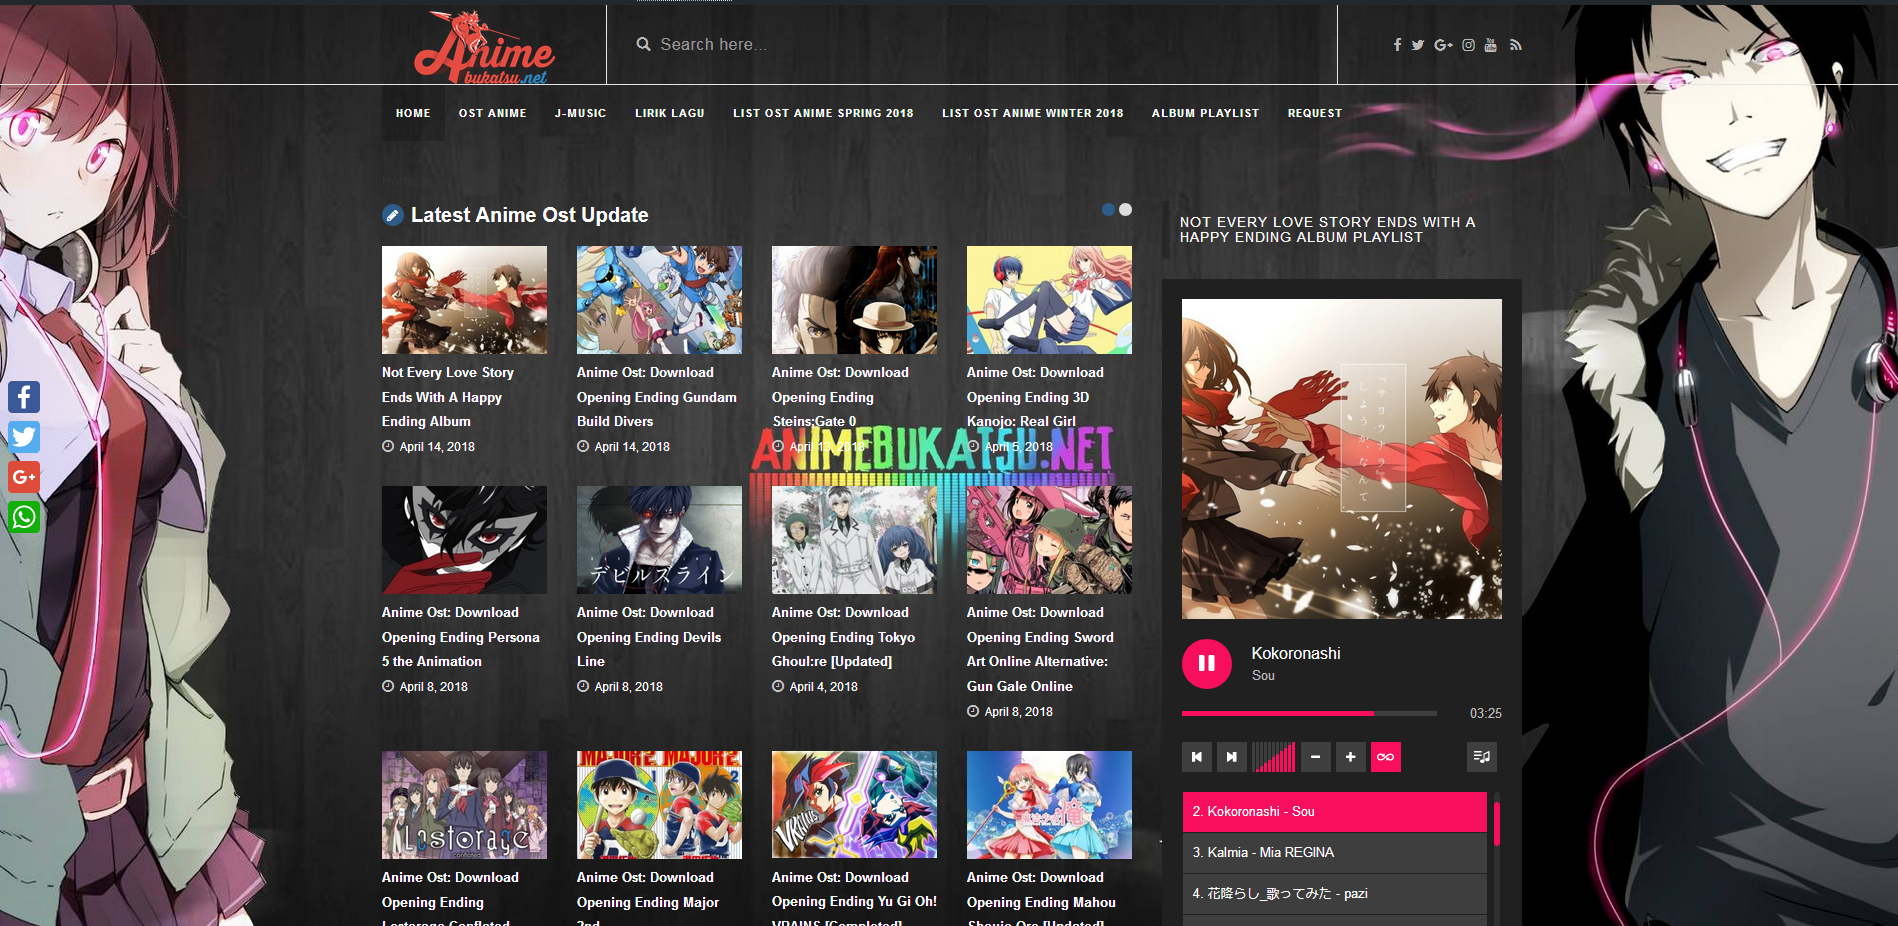 Mengenal Anime Bukatsu, Situs Lagu dan Ost Anime Dengan Fitur Playlist